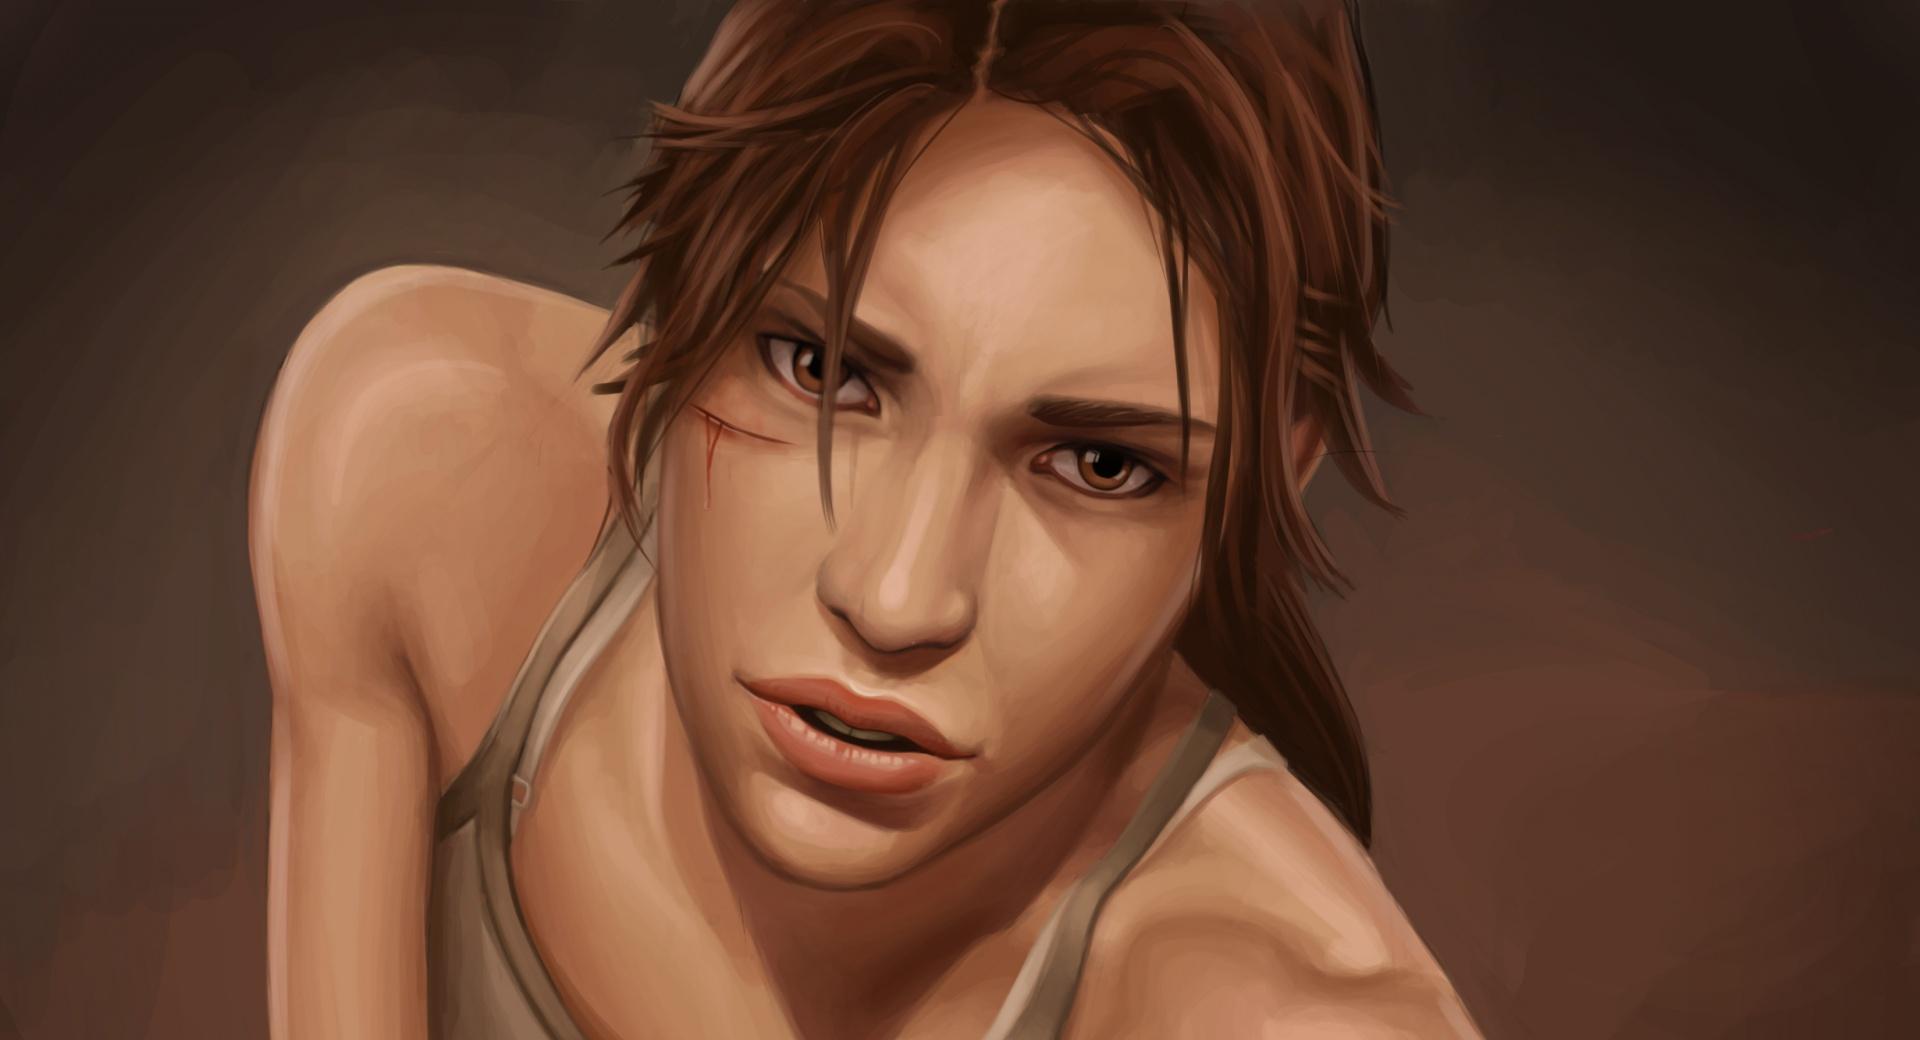 Tomb Raider 2012 Lara Croft at 1024 x 1024 iPad size wallpapers HD quality